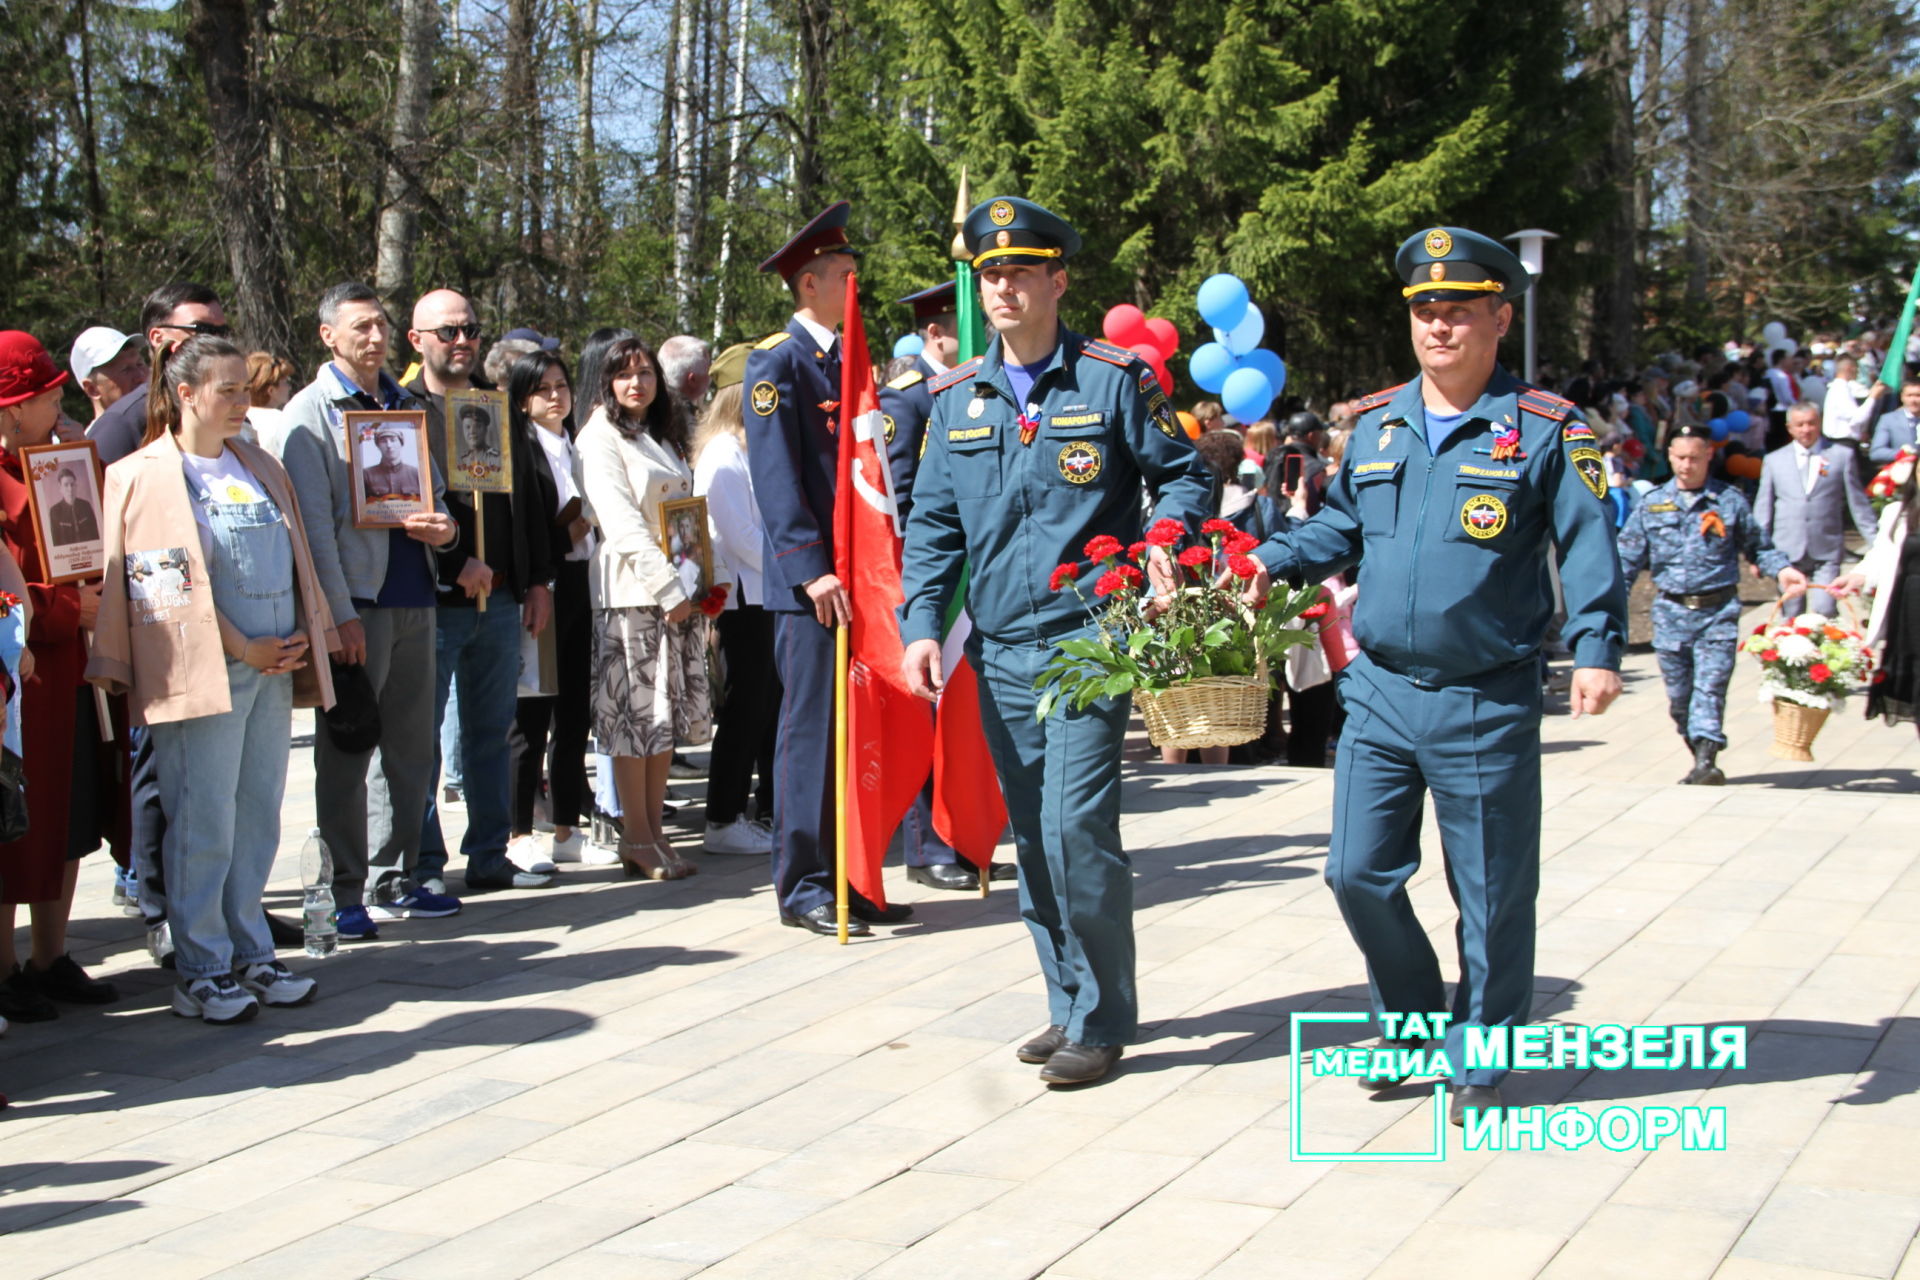 Мензелинцы возложили цветы к памятникам в честь участников Великой Отечественной войны